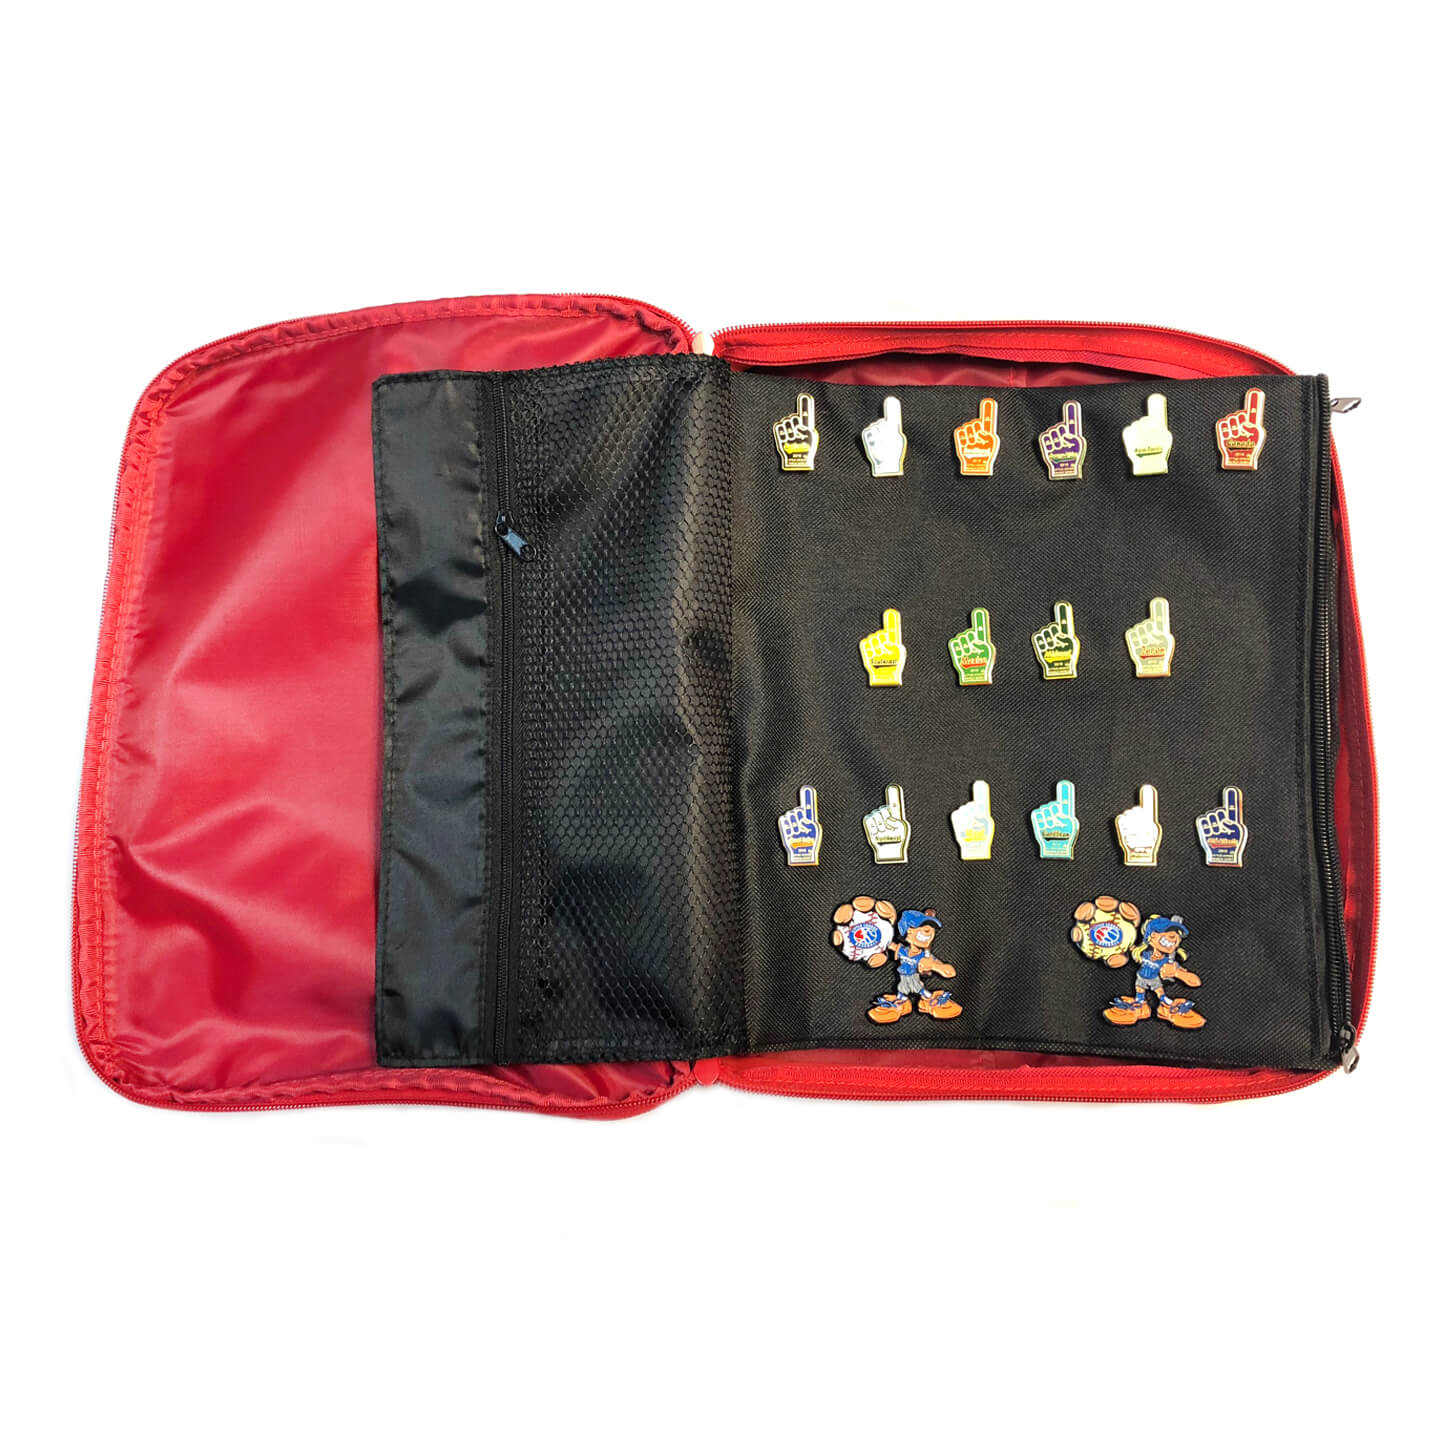 2015 Small Pin Bag - Disney Pins Blog